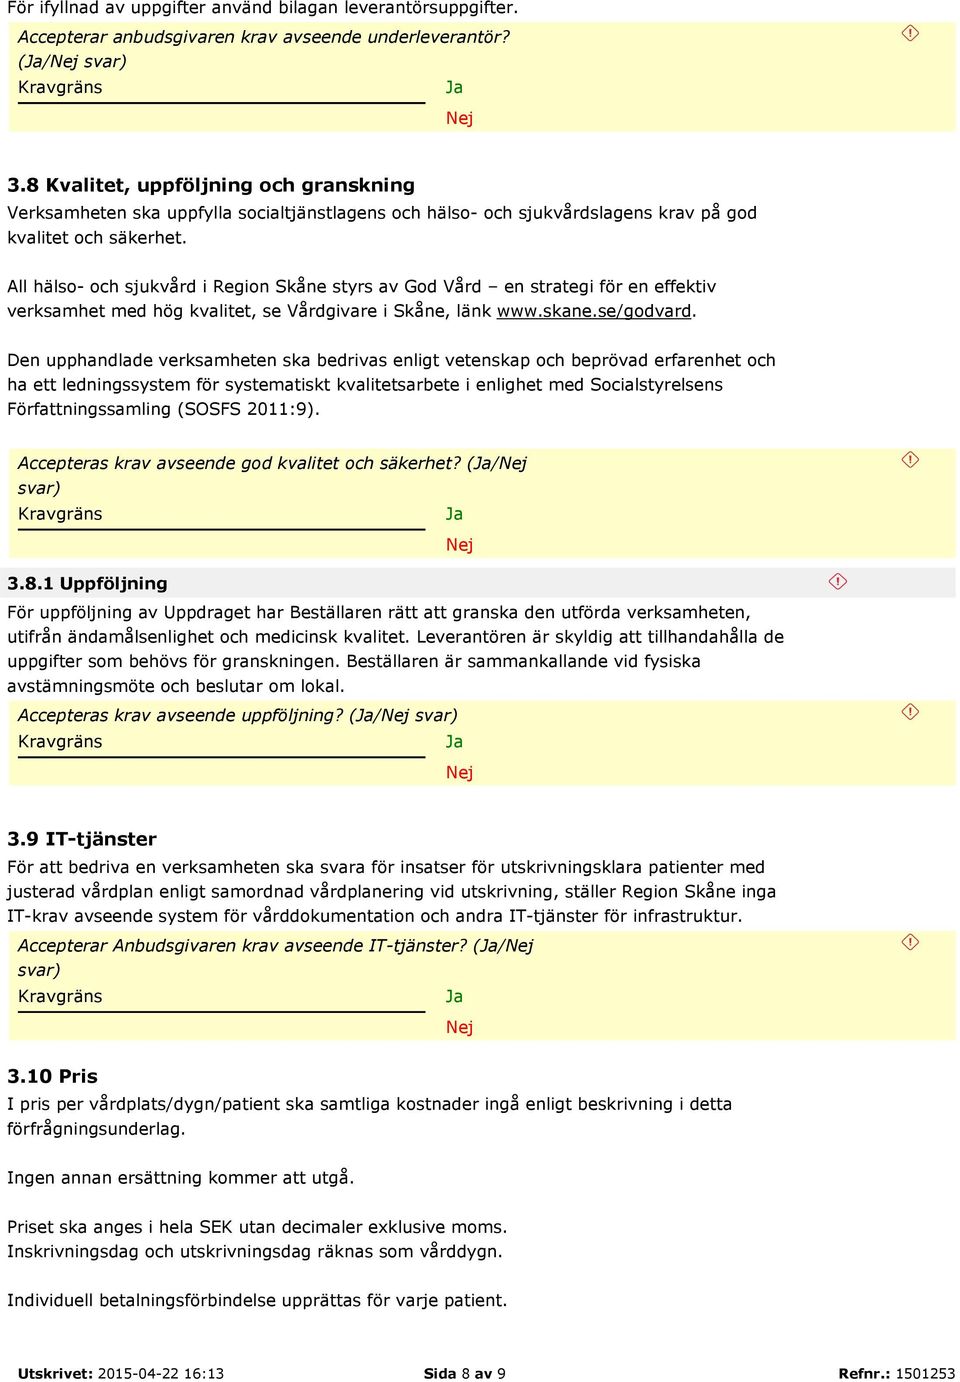 All hälso- och sjukvård i Region Skåne styrs av God Vård en strategi för en effektiv verksamhet med hög kvalitet, se Vårdgivare i Skåne, länk www.skane.se/godvard.